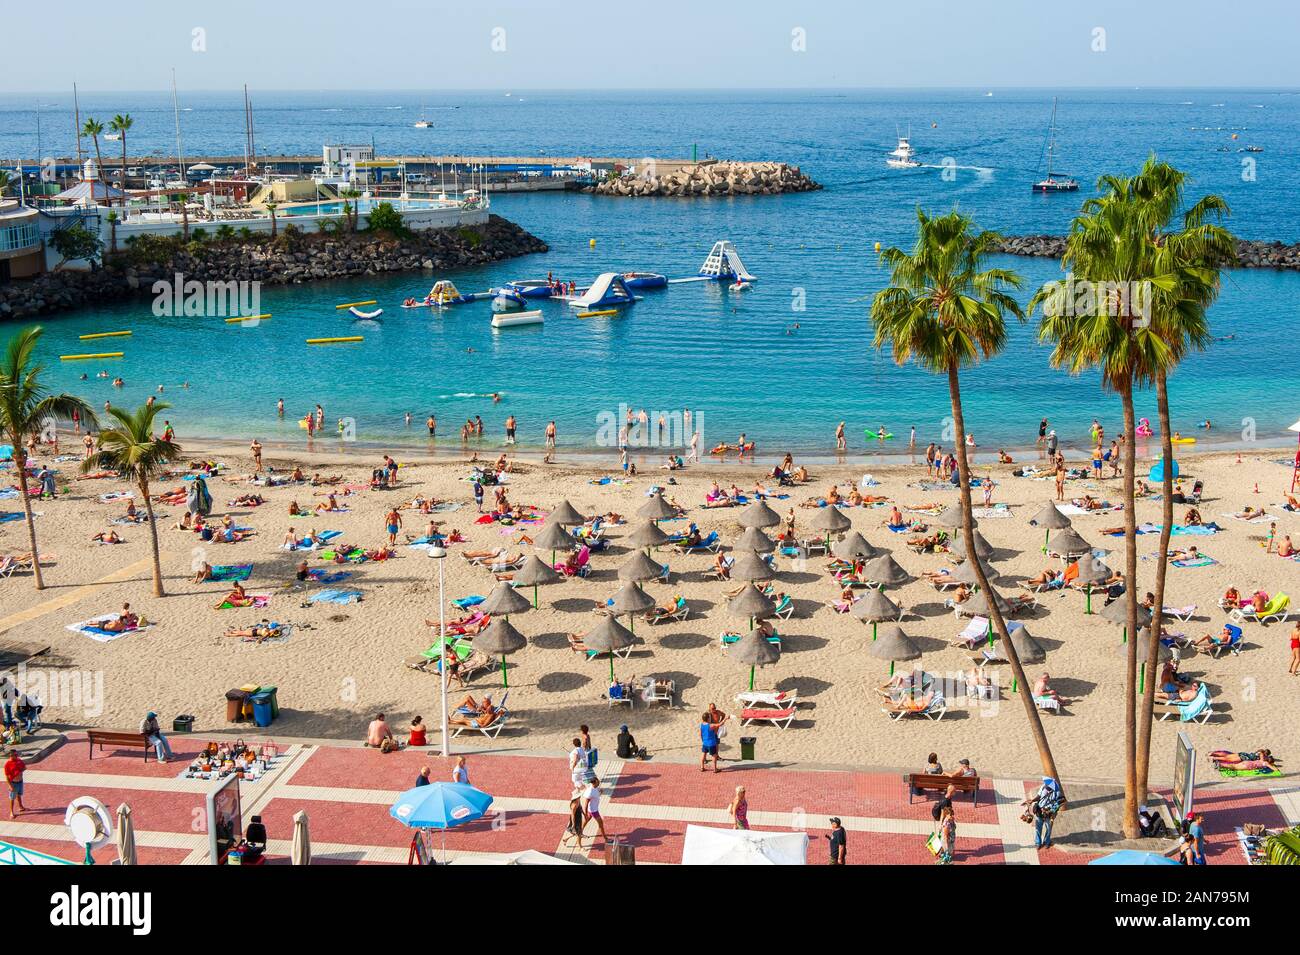 Playa de puerto colon fotografías e imágenes de alta resolución - Alamy